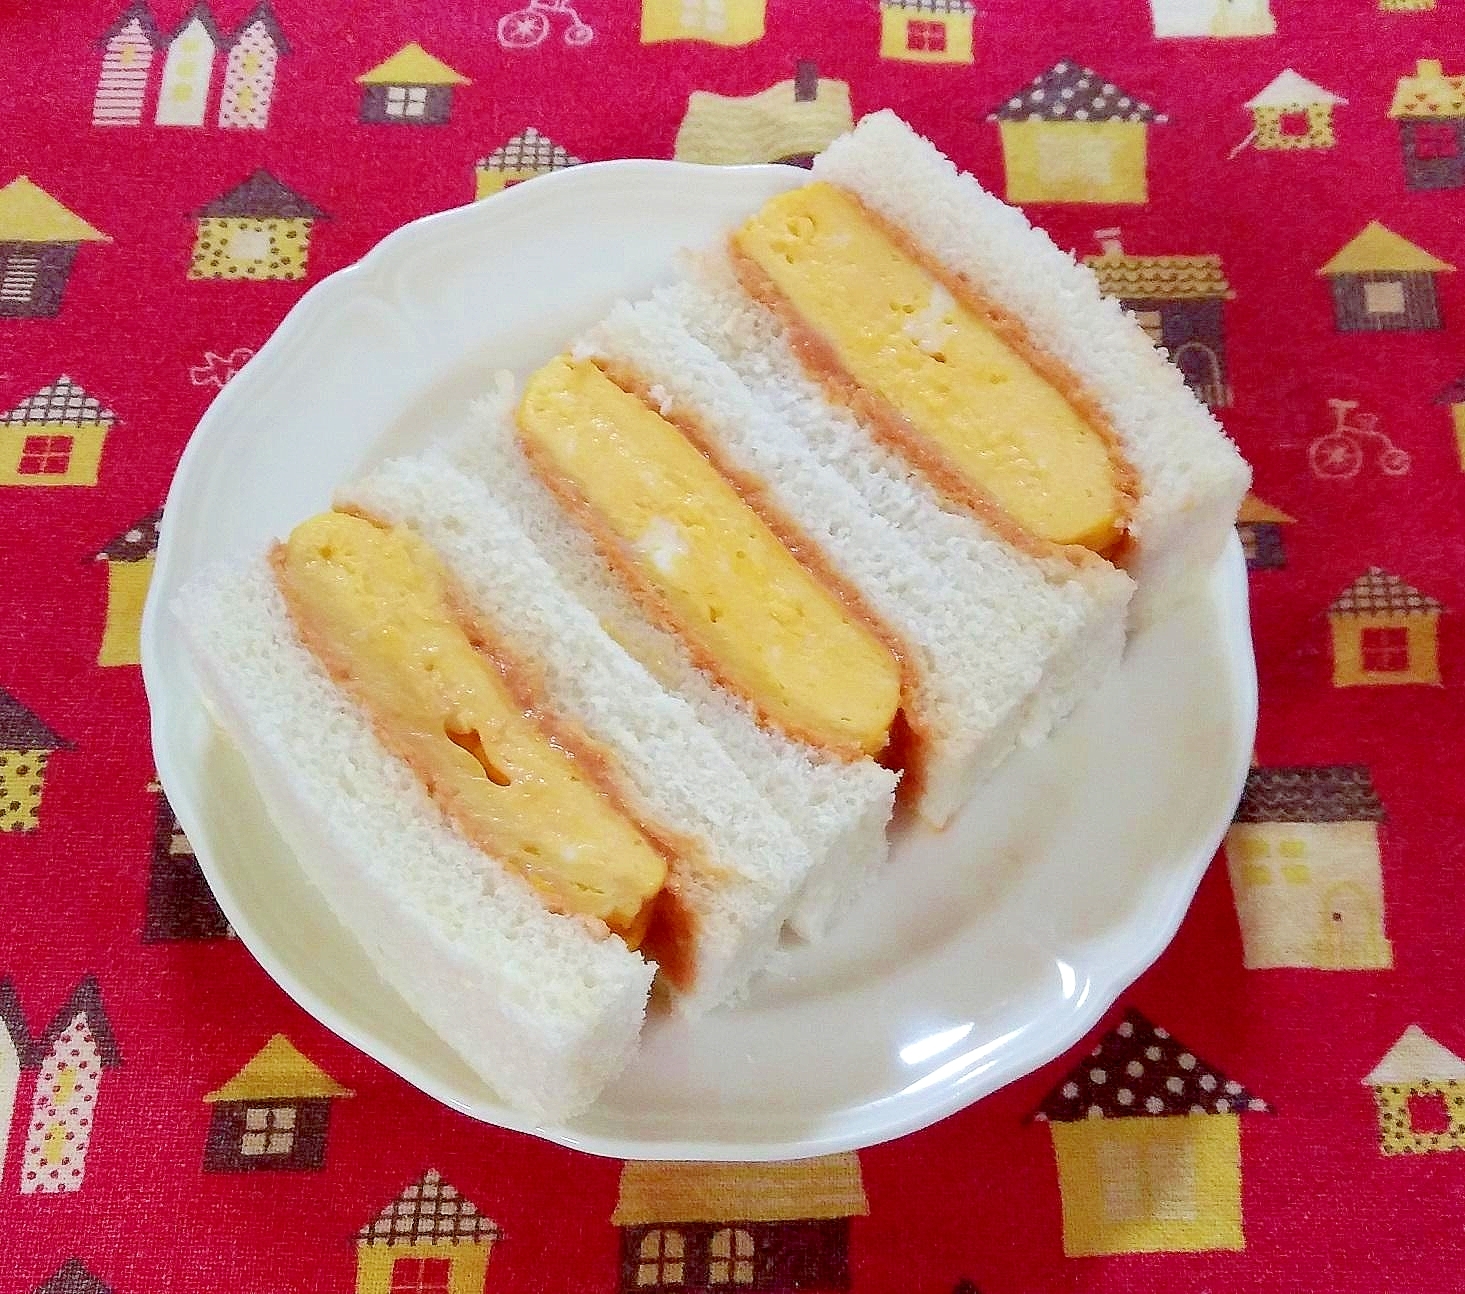 オーロラソースの厚焼き卵サンドイッチ